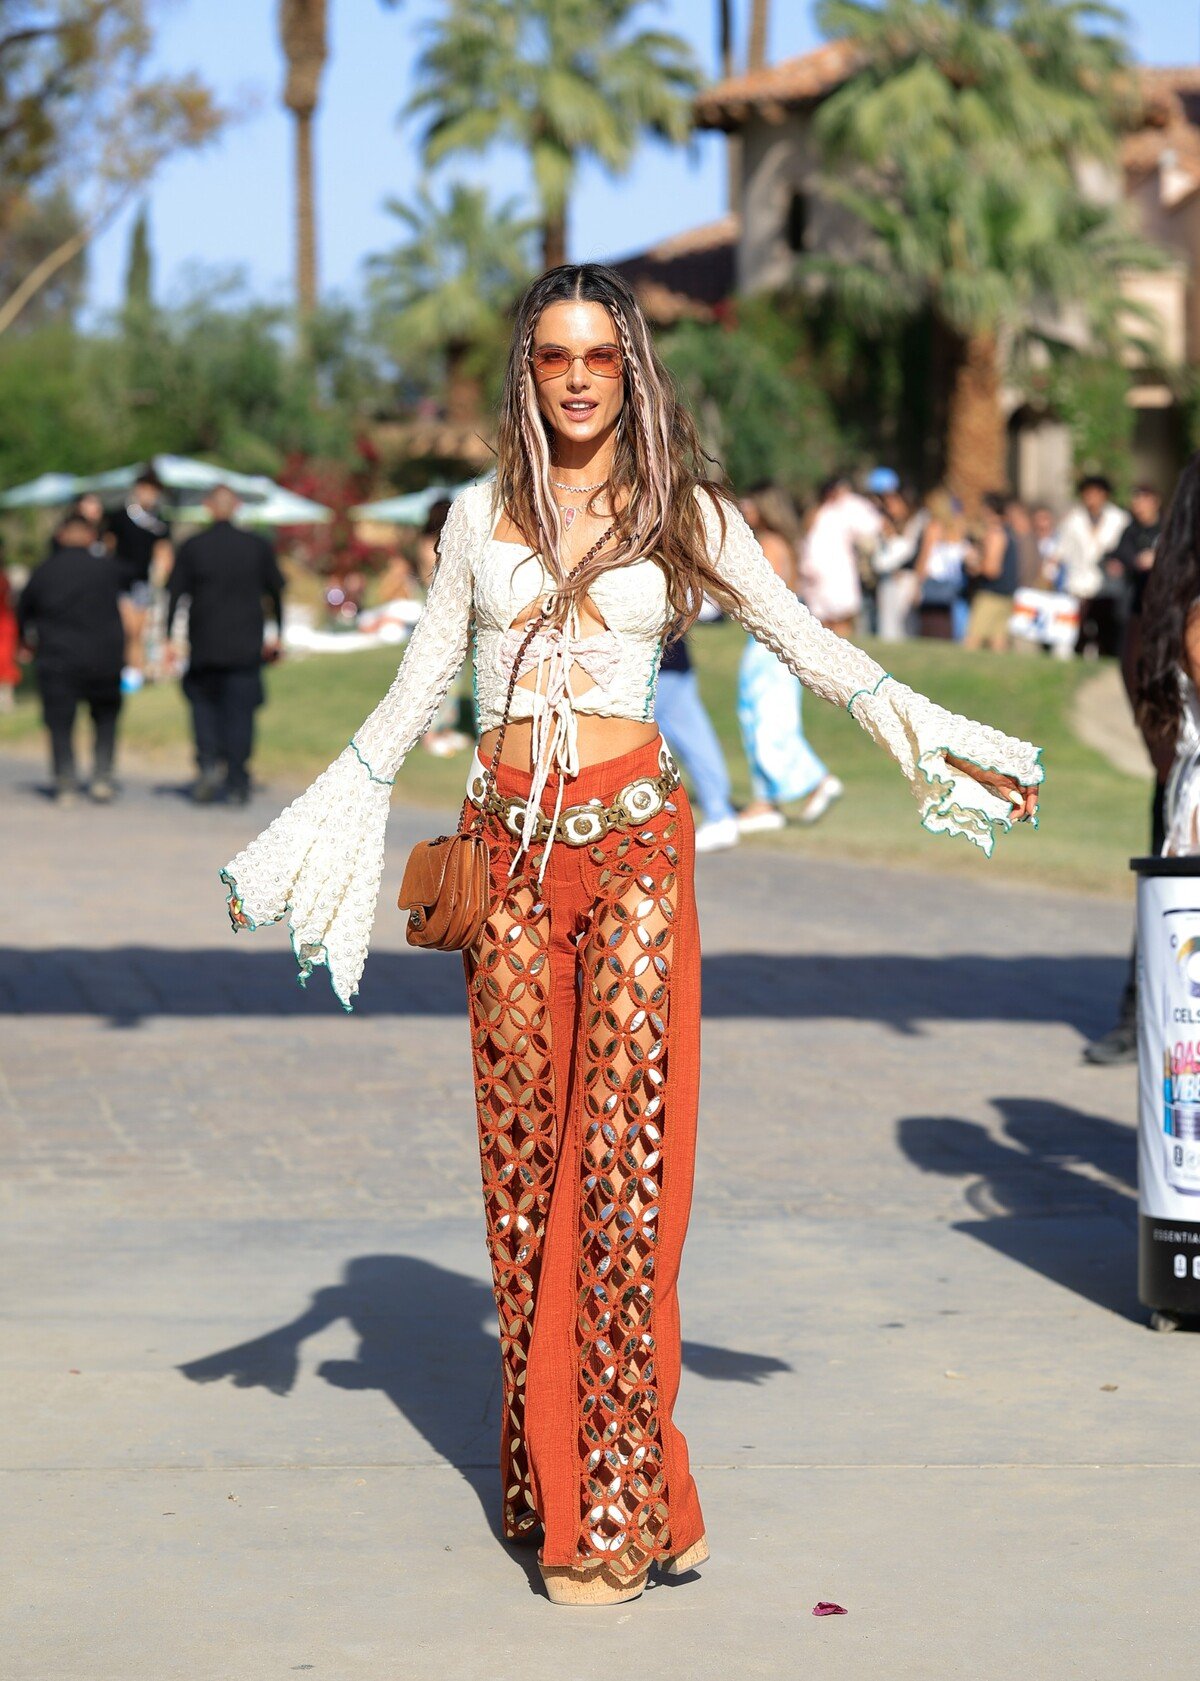 Modelka Alessandra Ambrosio predviedla na tohtoročnej Coachelle jeden z najlepších lookov. Brazílskej kráske sa zároveň podarilo obhájiť nadčasovosť hippie štýlu, ktorý na svetových festivaloch úspešne úraduje už niekoľko rokov. 